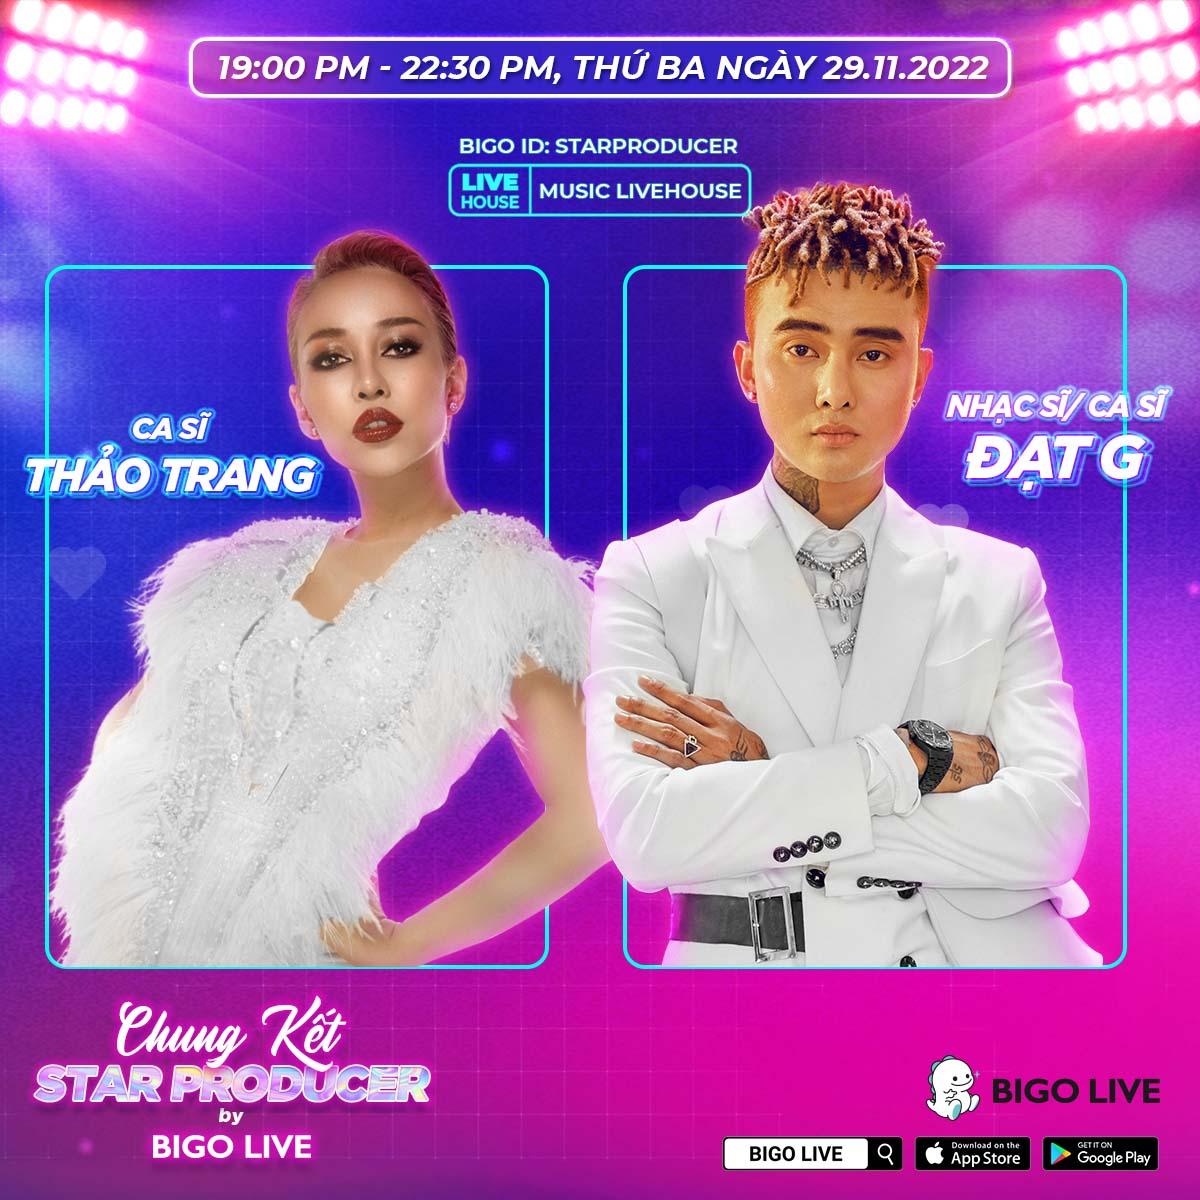 Thảo Trang và Đạt G trở thành giám khảo đêm chung kết Star Producer by Bigo Live - Ảnh 3.